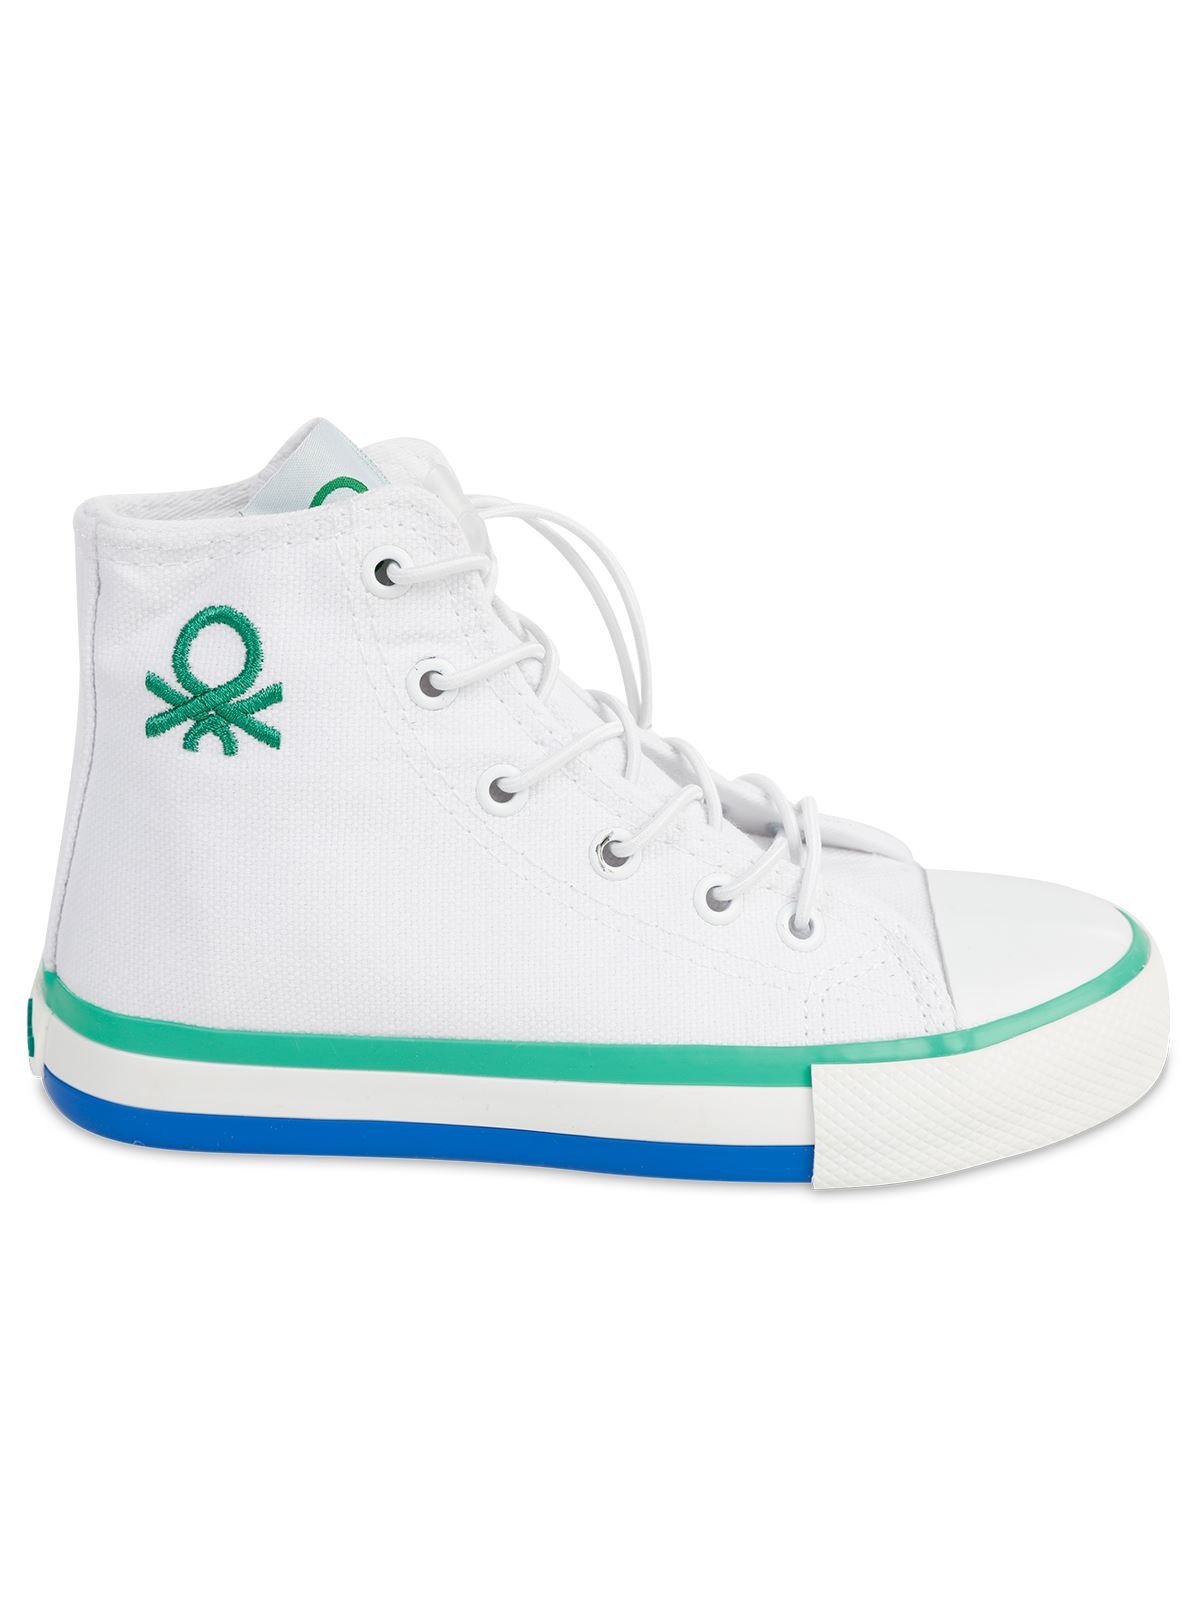 Benetton Erkek Çocuk Spor Ayakkabı 31-35 Numara Beyaz-Yeşil